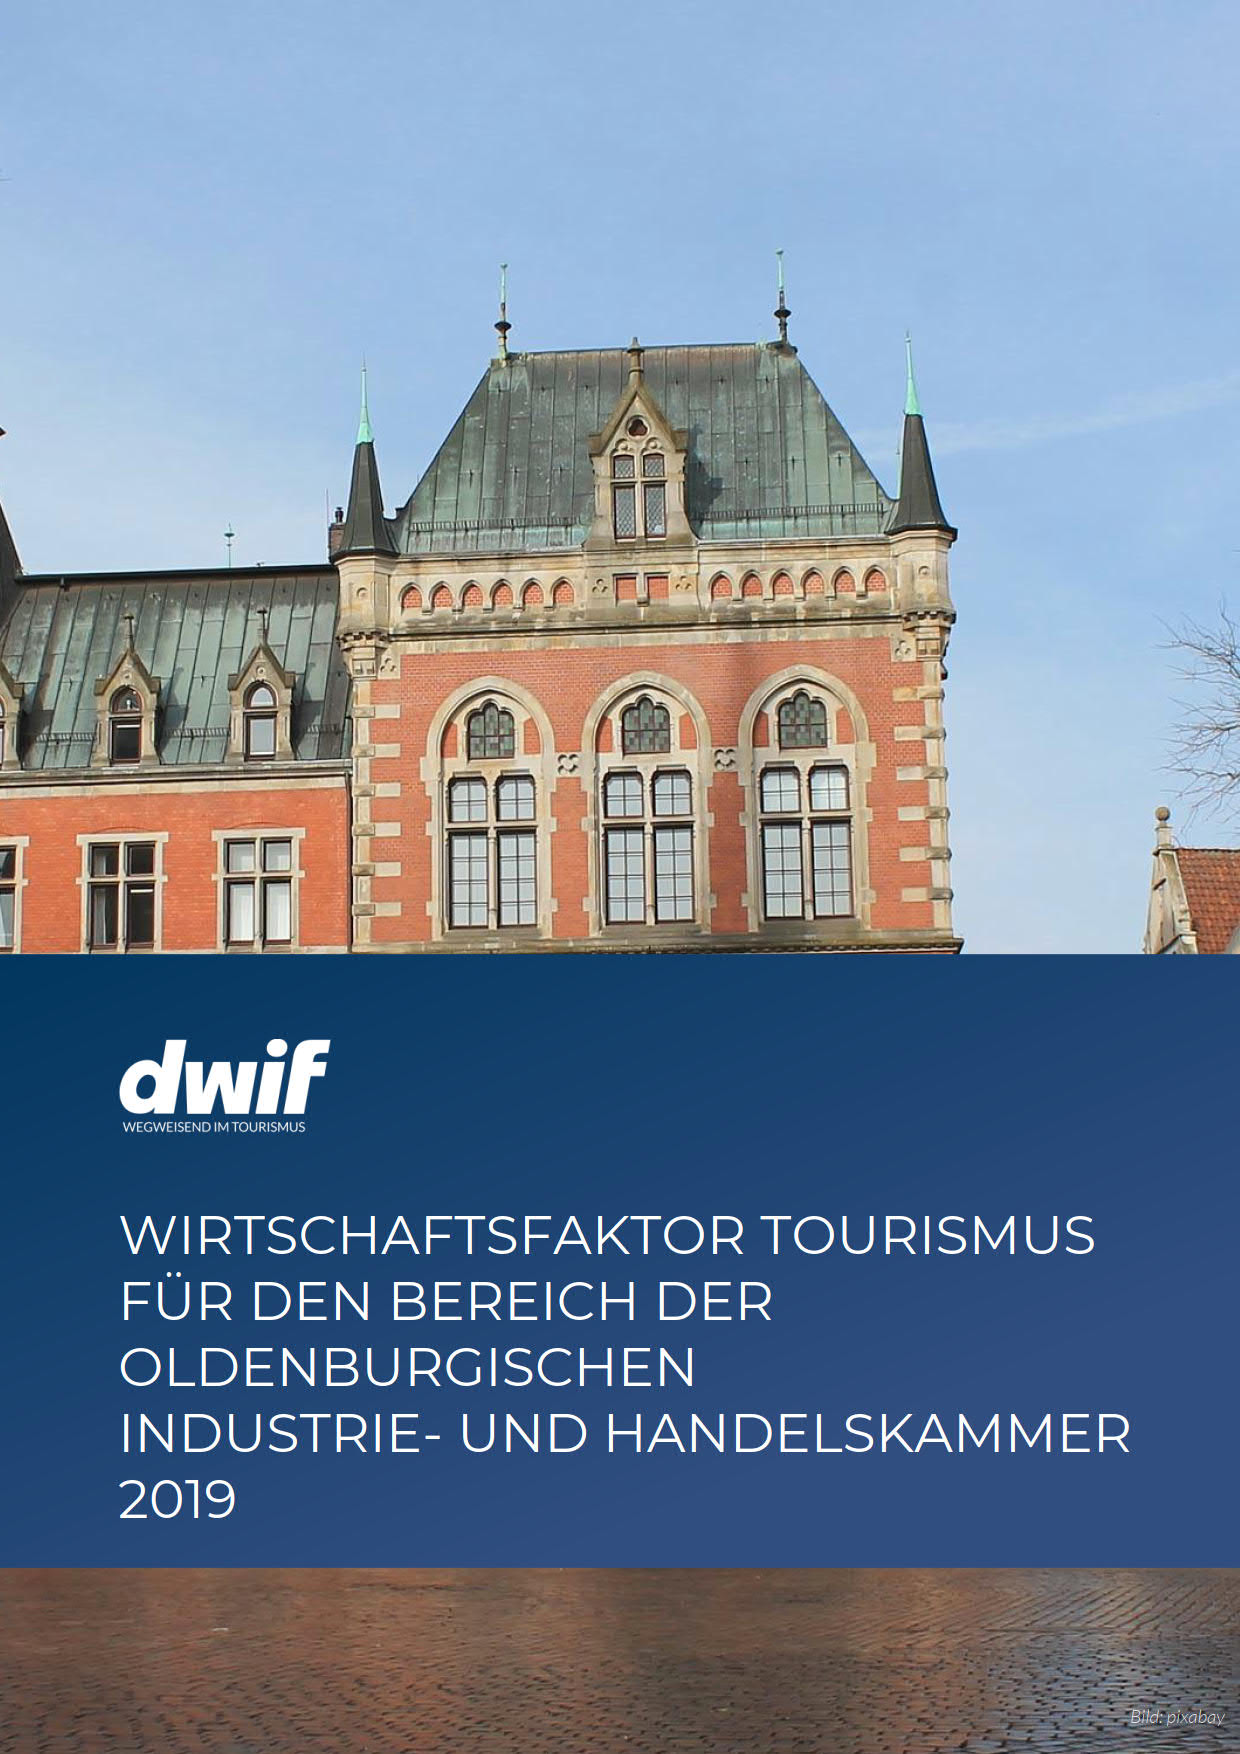 dwif: Wirtschaftsfaktor Tourismus Oldenburg